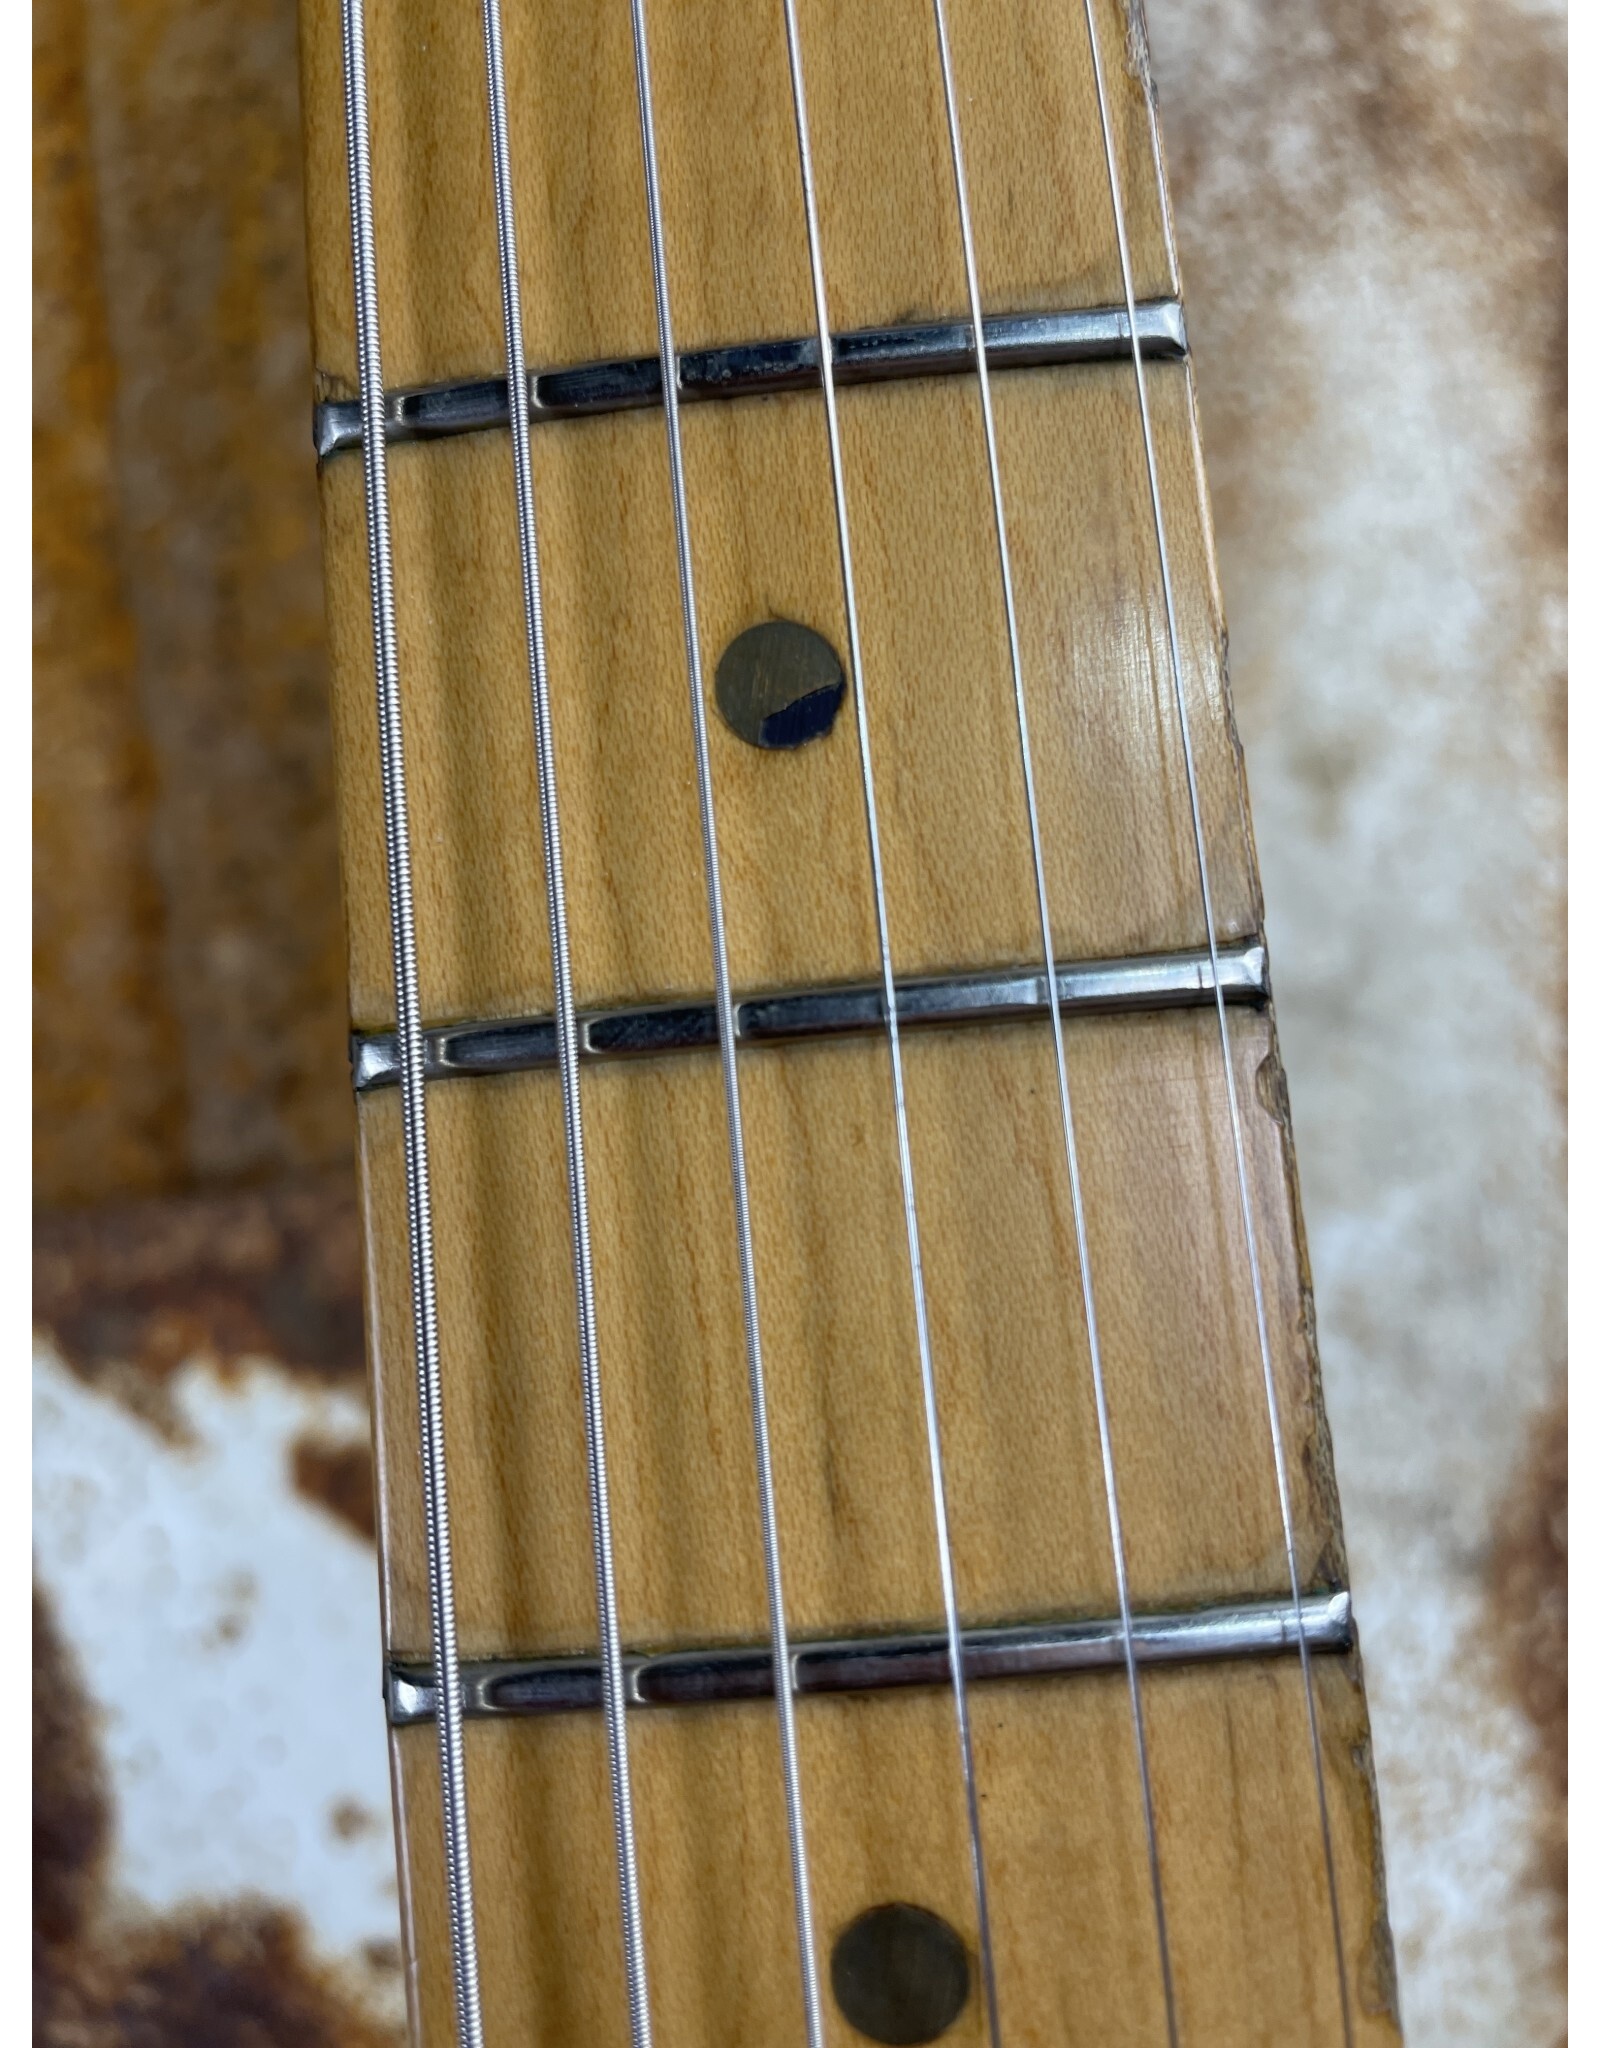 Fender Fender American Stratocaster 1999 Sunburst (Used)